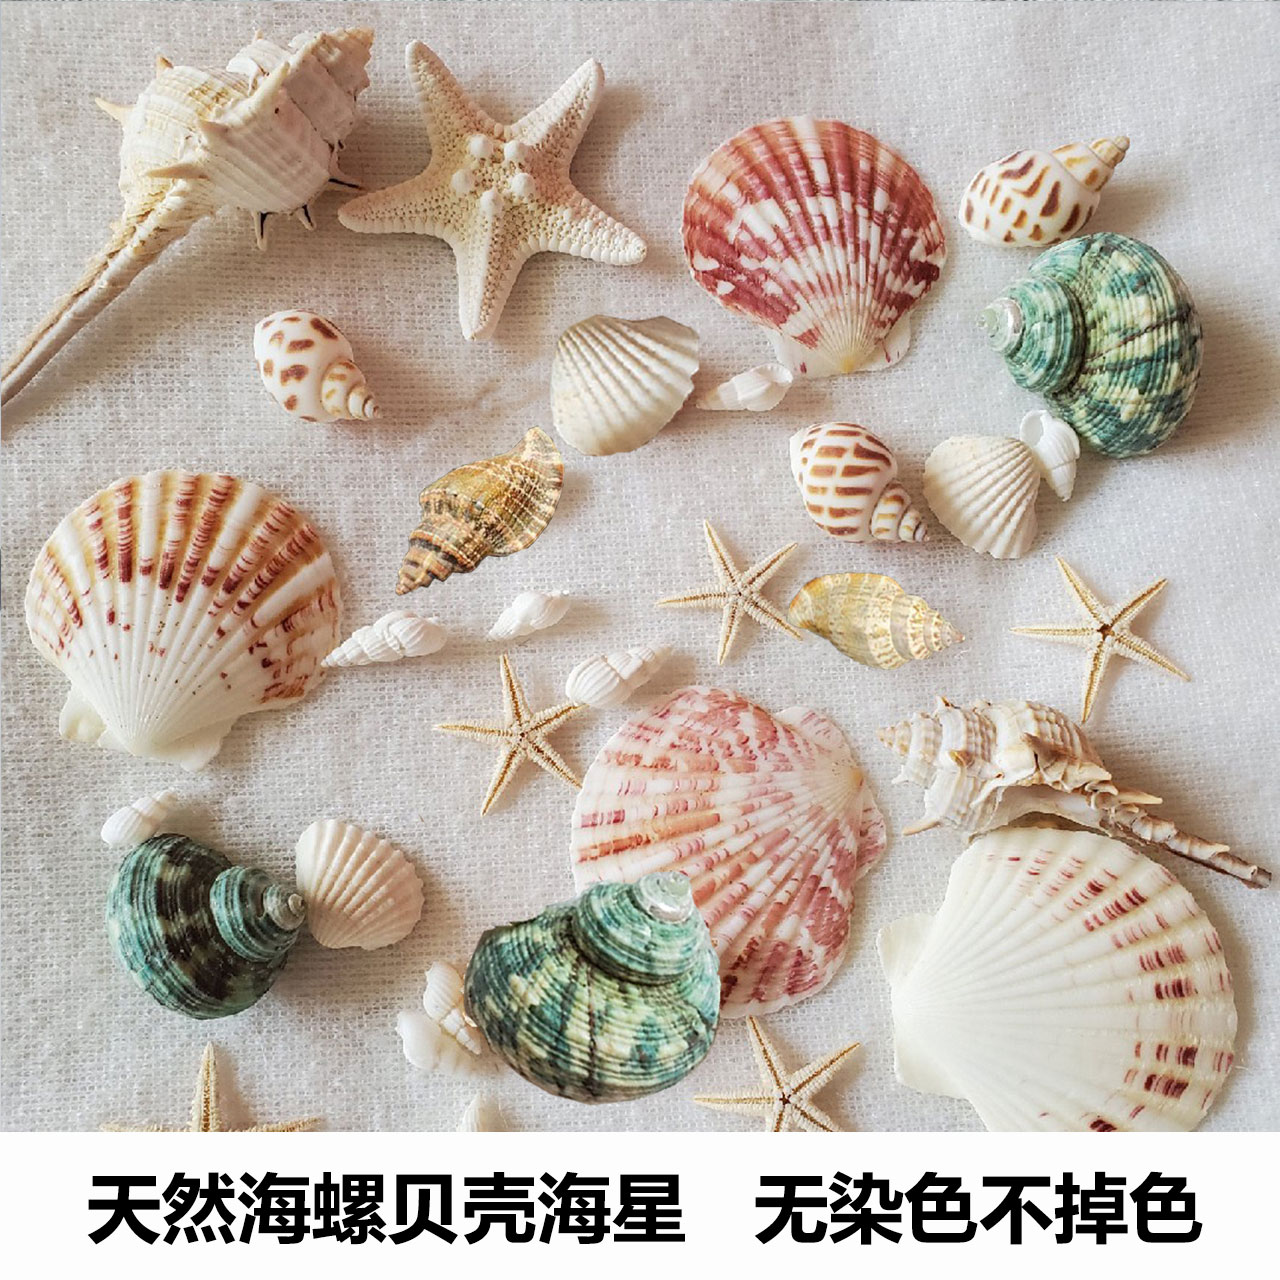 天然贝壳海螺海星海胆壳幼儿园手工diy贝壳相框鱼缸造景大海螺壳